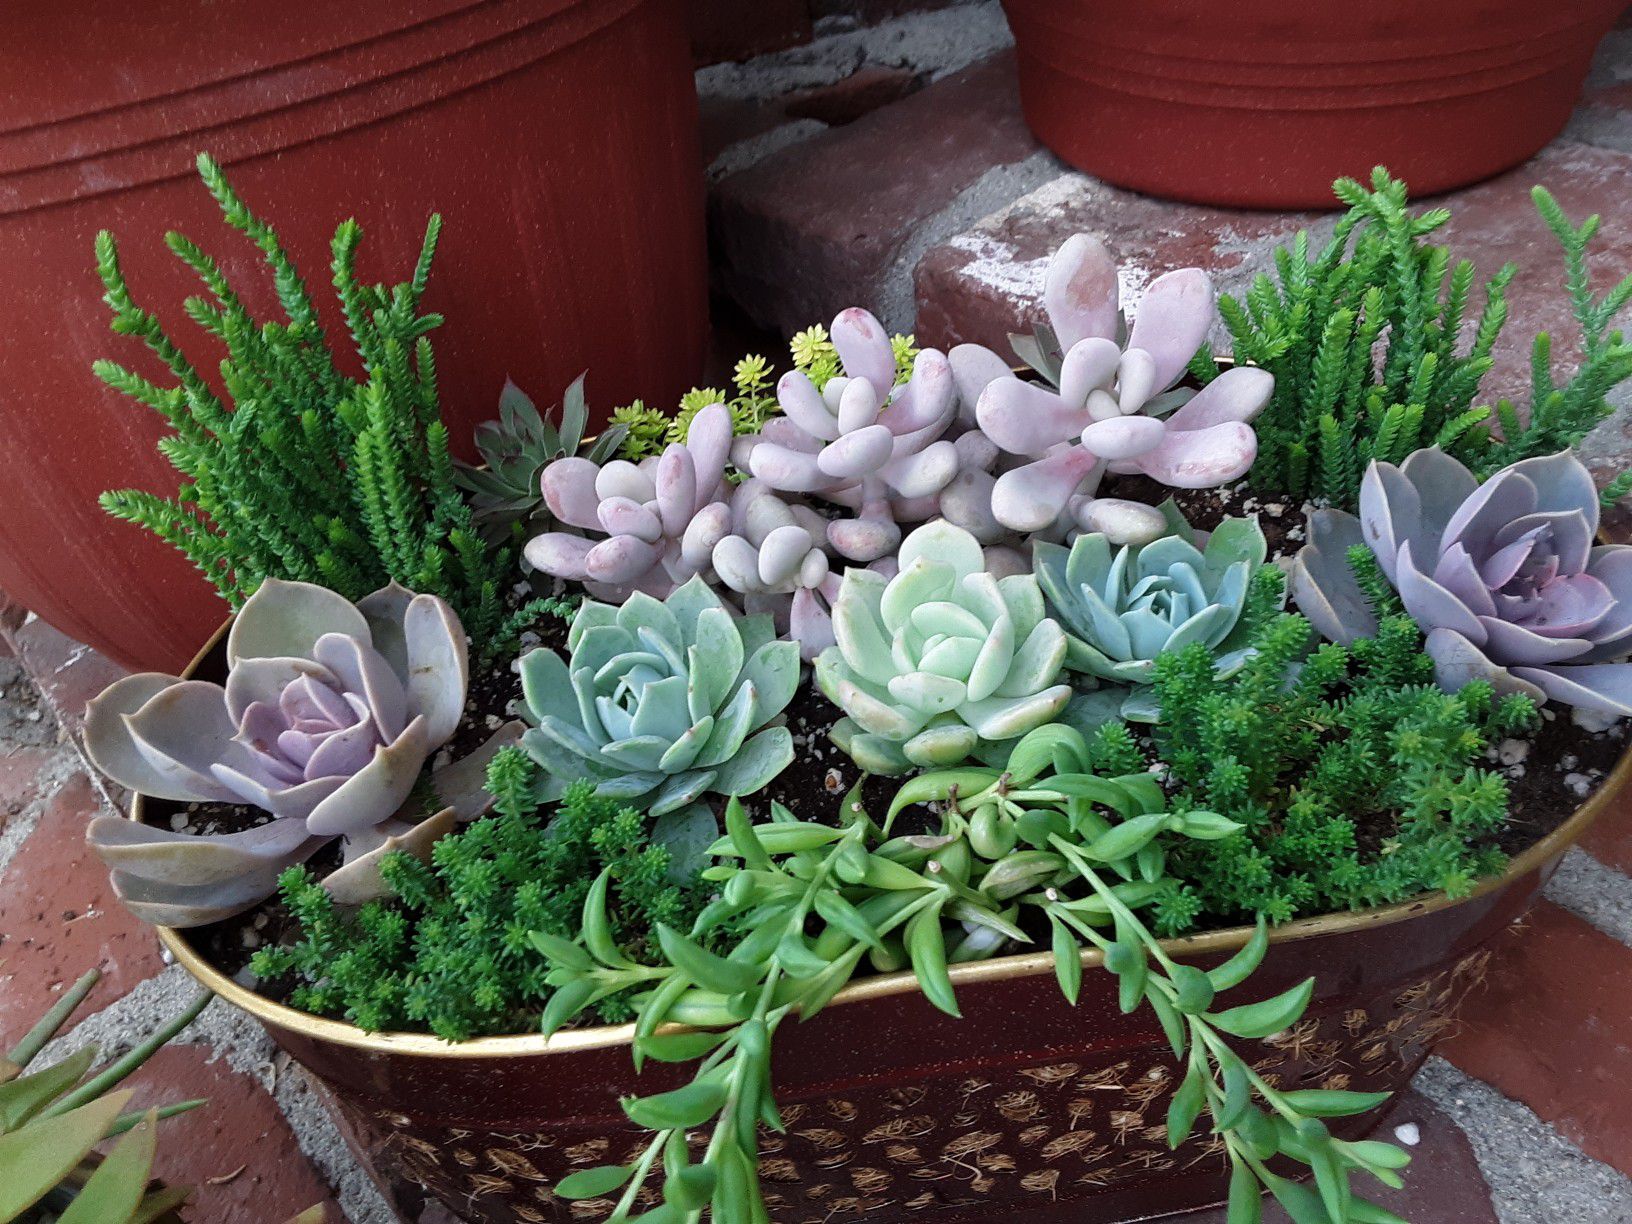 10" pot with succulent plants